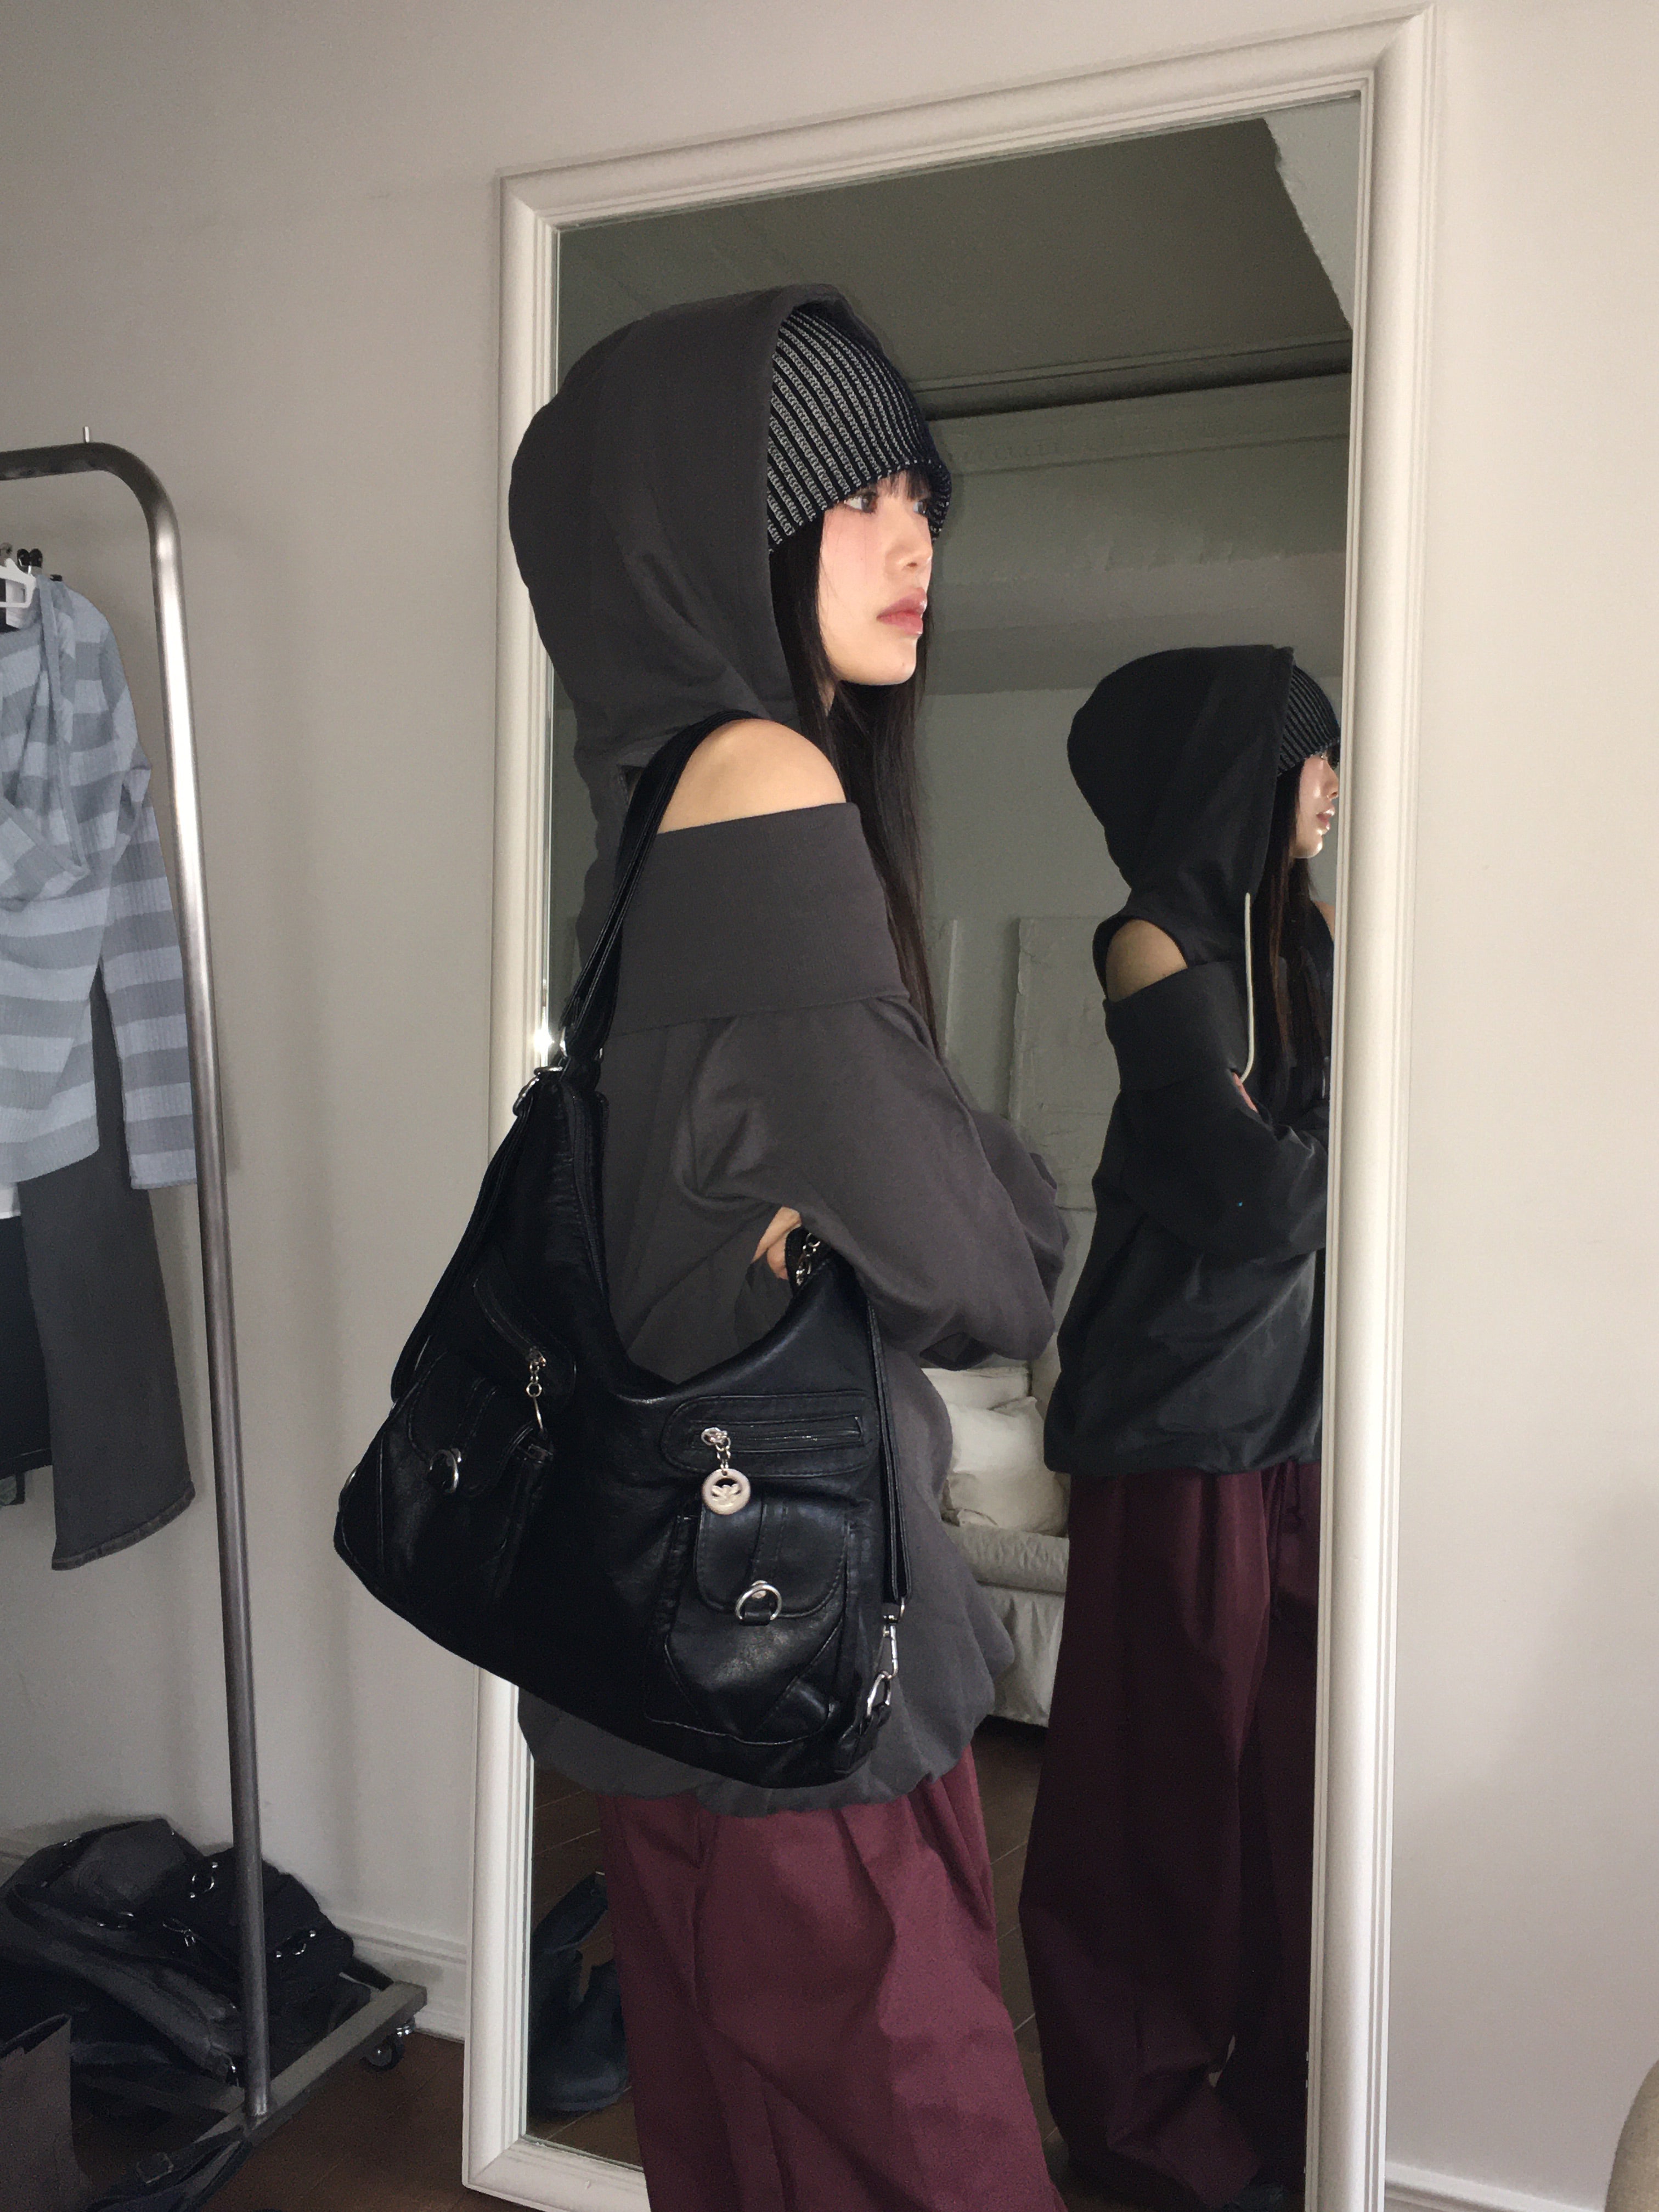 Kushal Vintage Leather Two-Pocket Two-Way Backpack Shoulder Bag